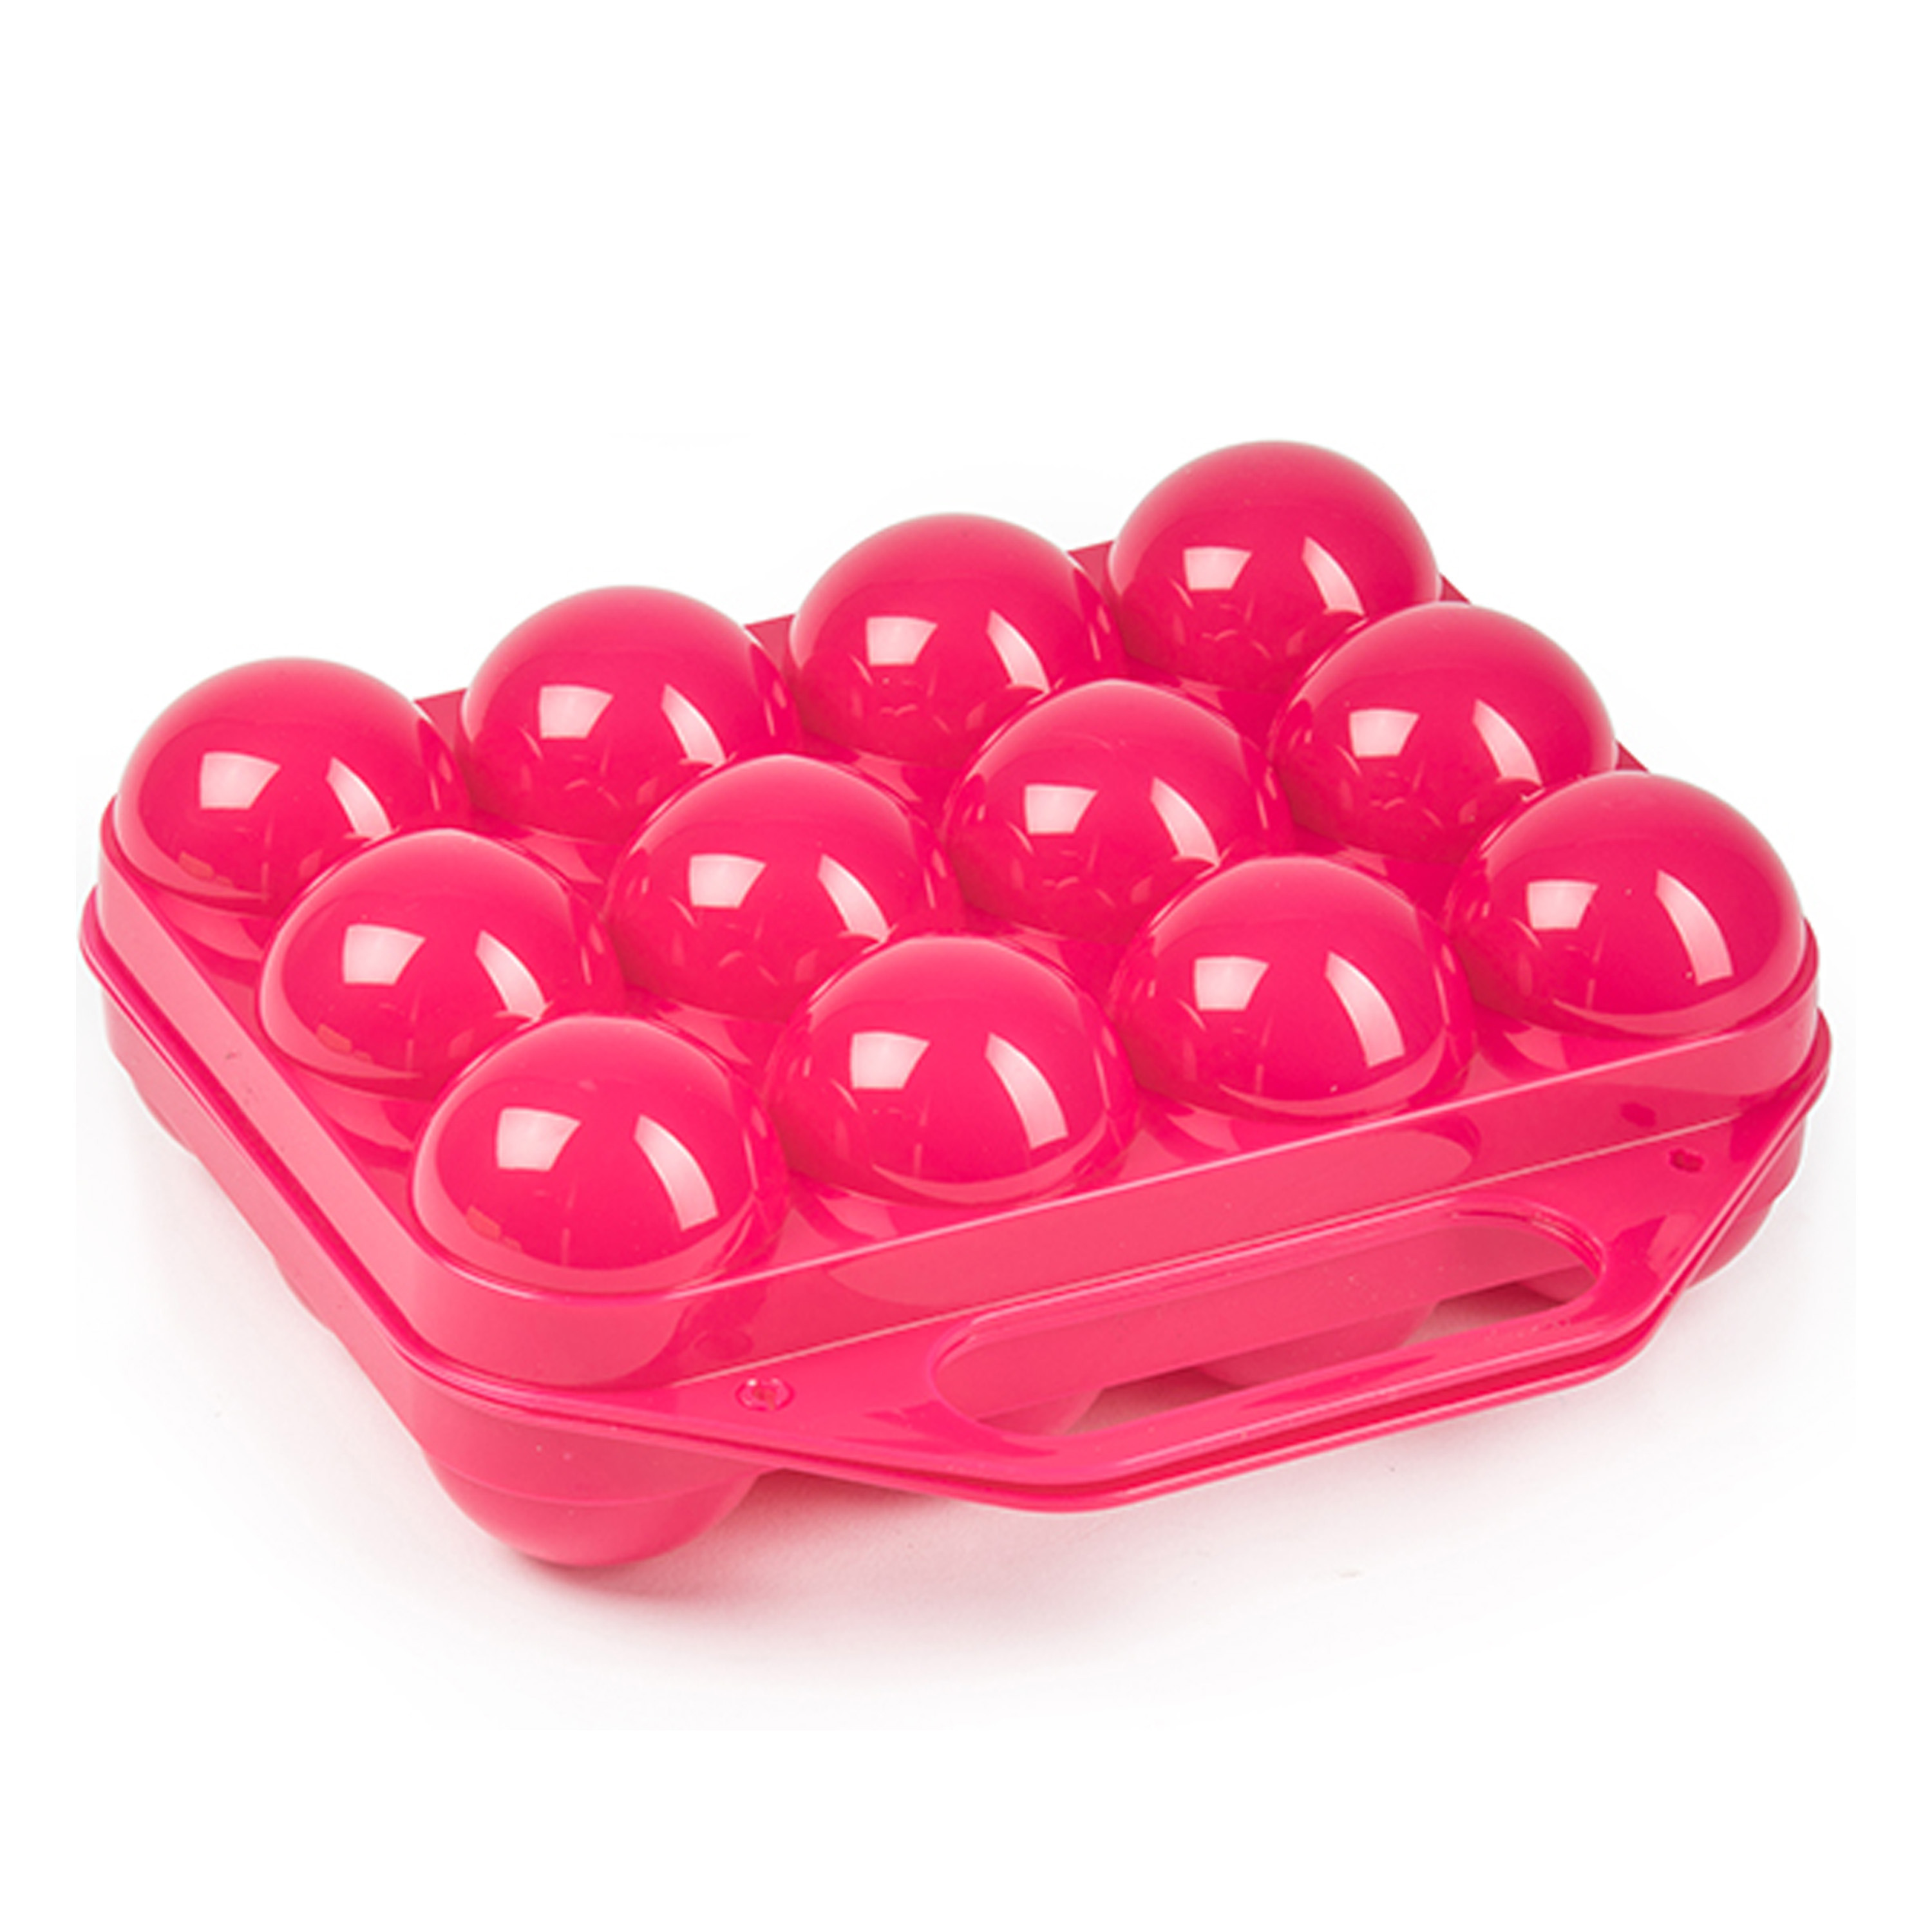 Eierdoos koelkast organizer eierhouder 12 eieren roze kunststof 20 x 19 cm